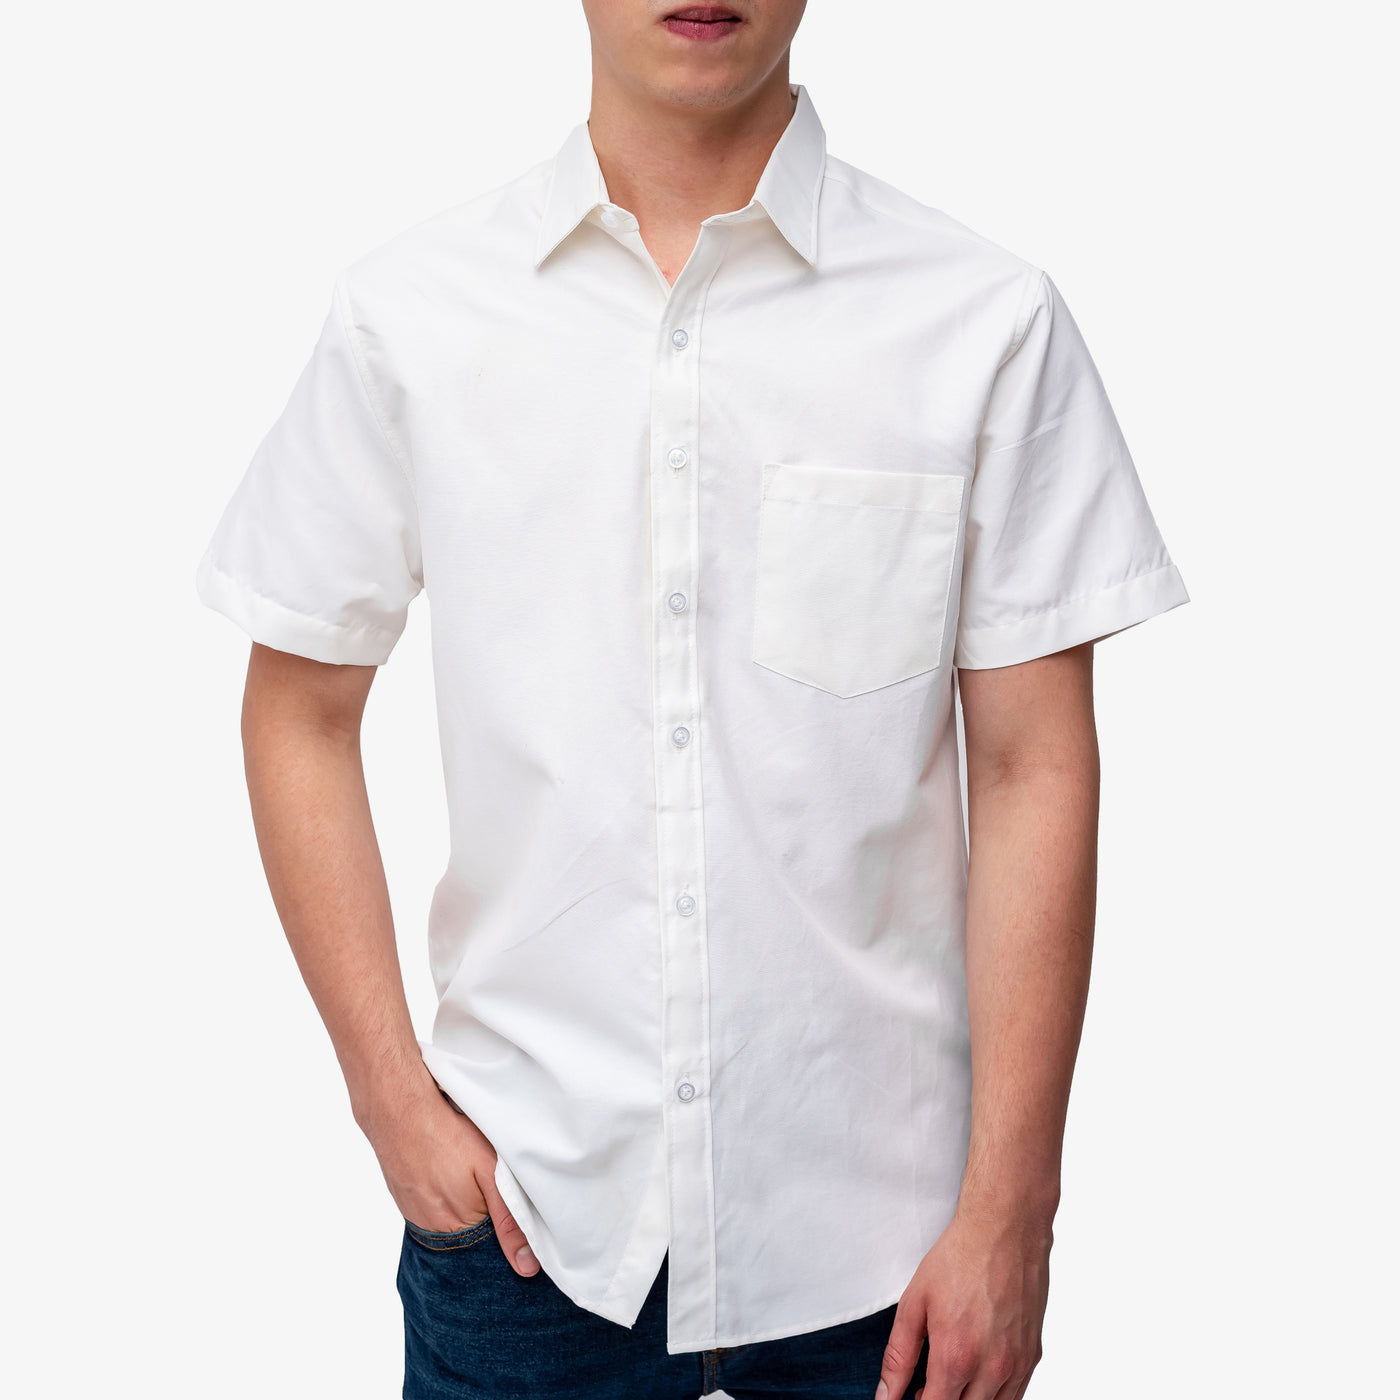 Camisa manga corta cuello normal - blanco hueso